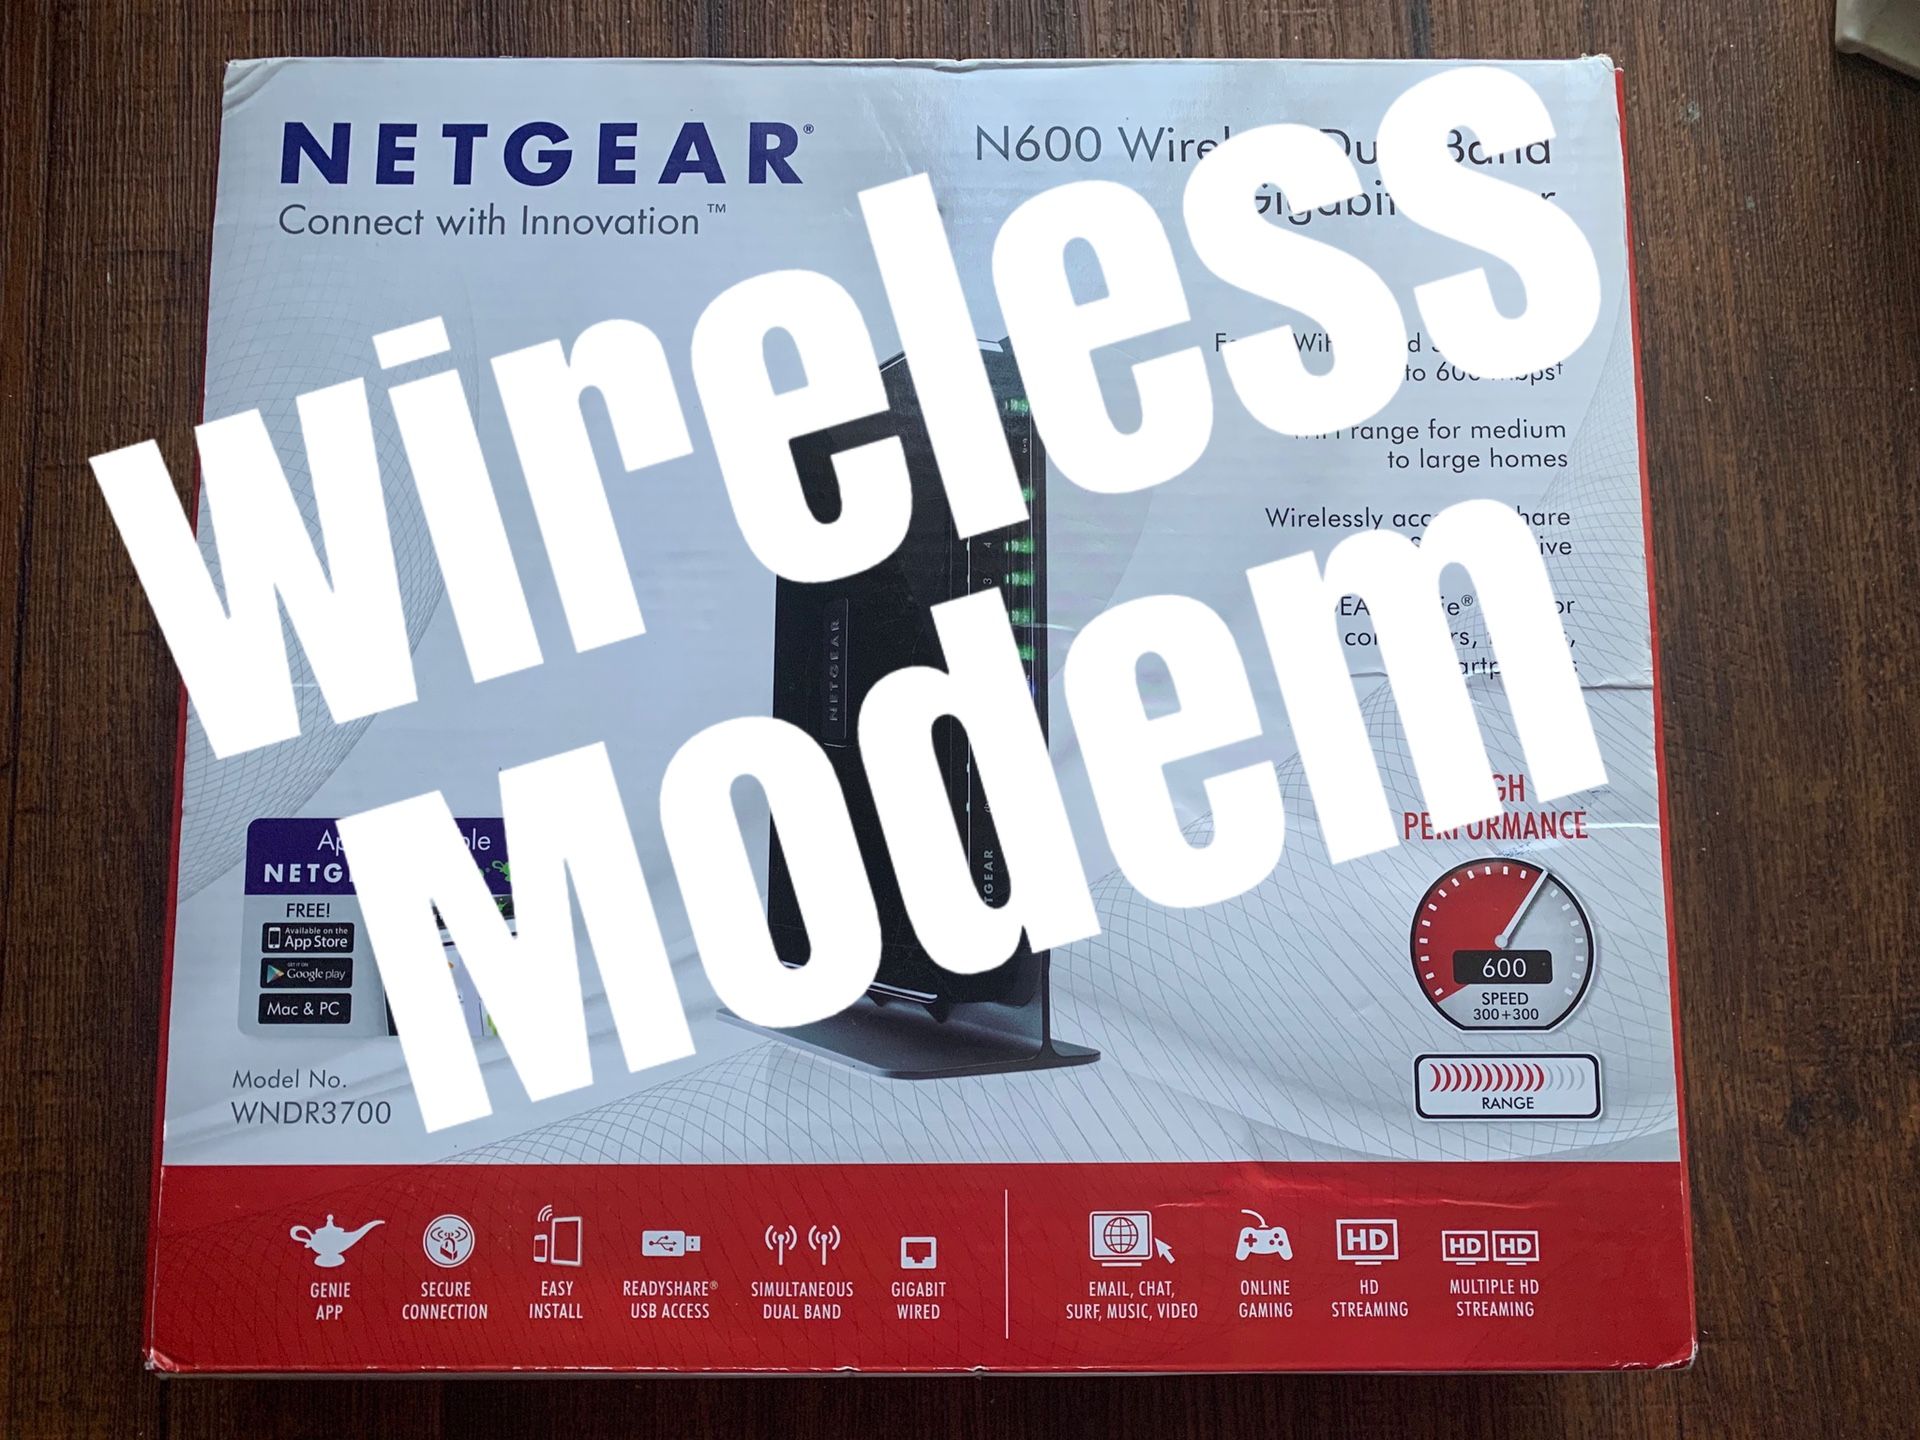 NETGEAR - WIFI Modem Router 600mps